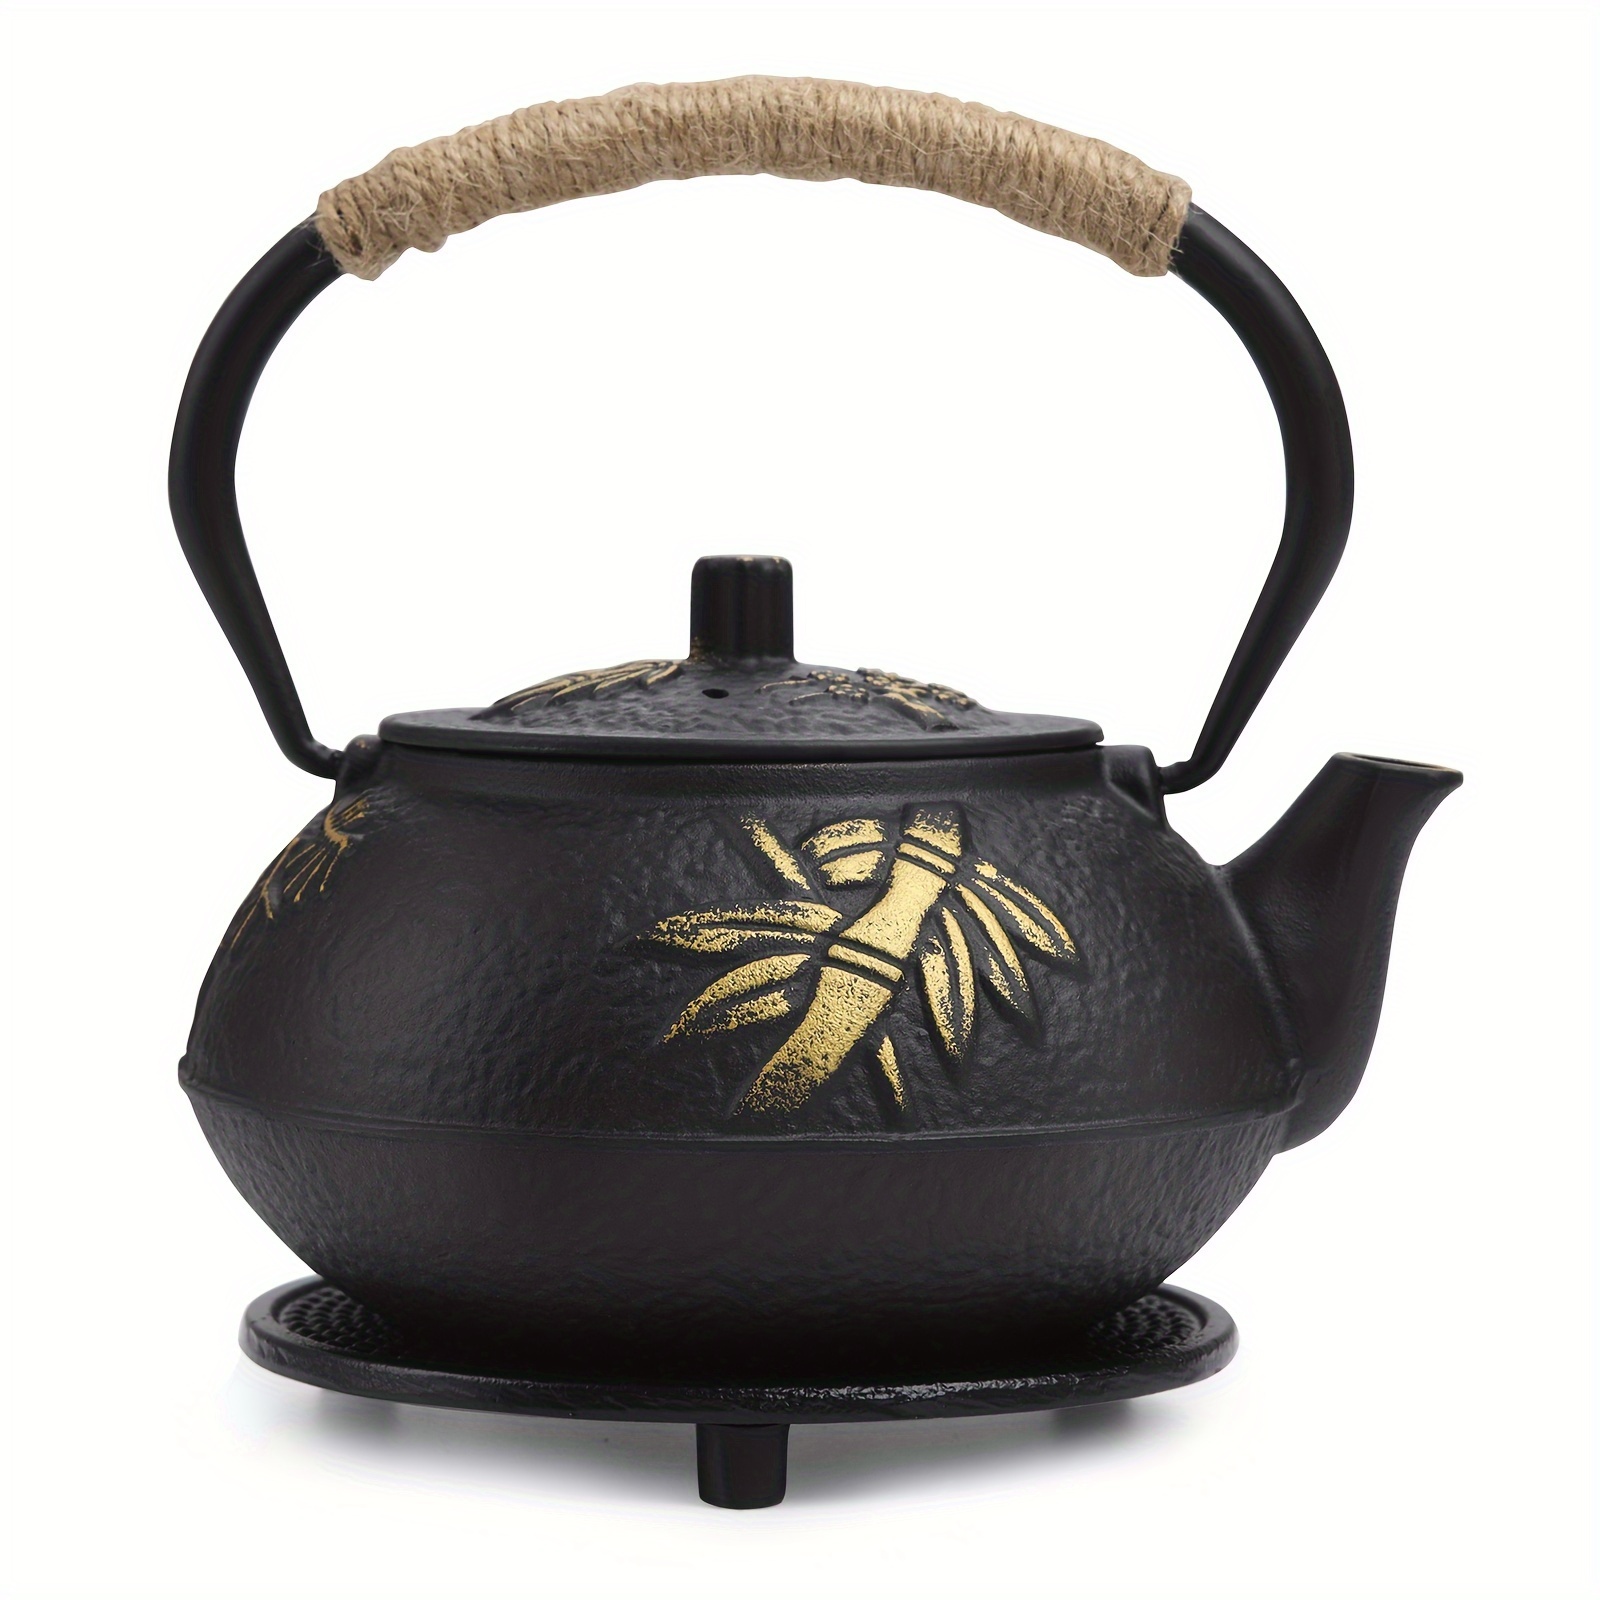 Tetera de hierro fundido, tetera japonesa con infusor para hojas sueltas,  tetera para estufa de té, cubierta segura con interior esmaltado, patrón de